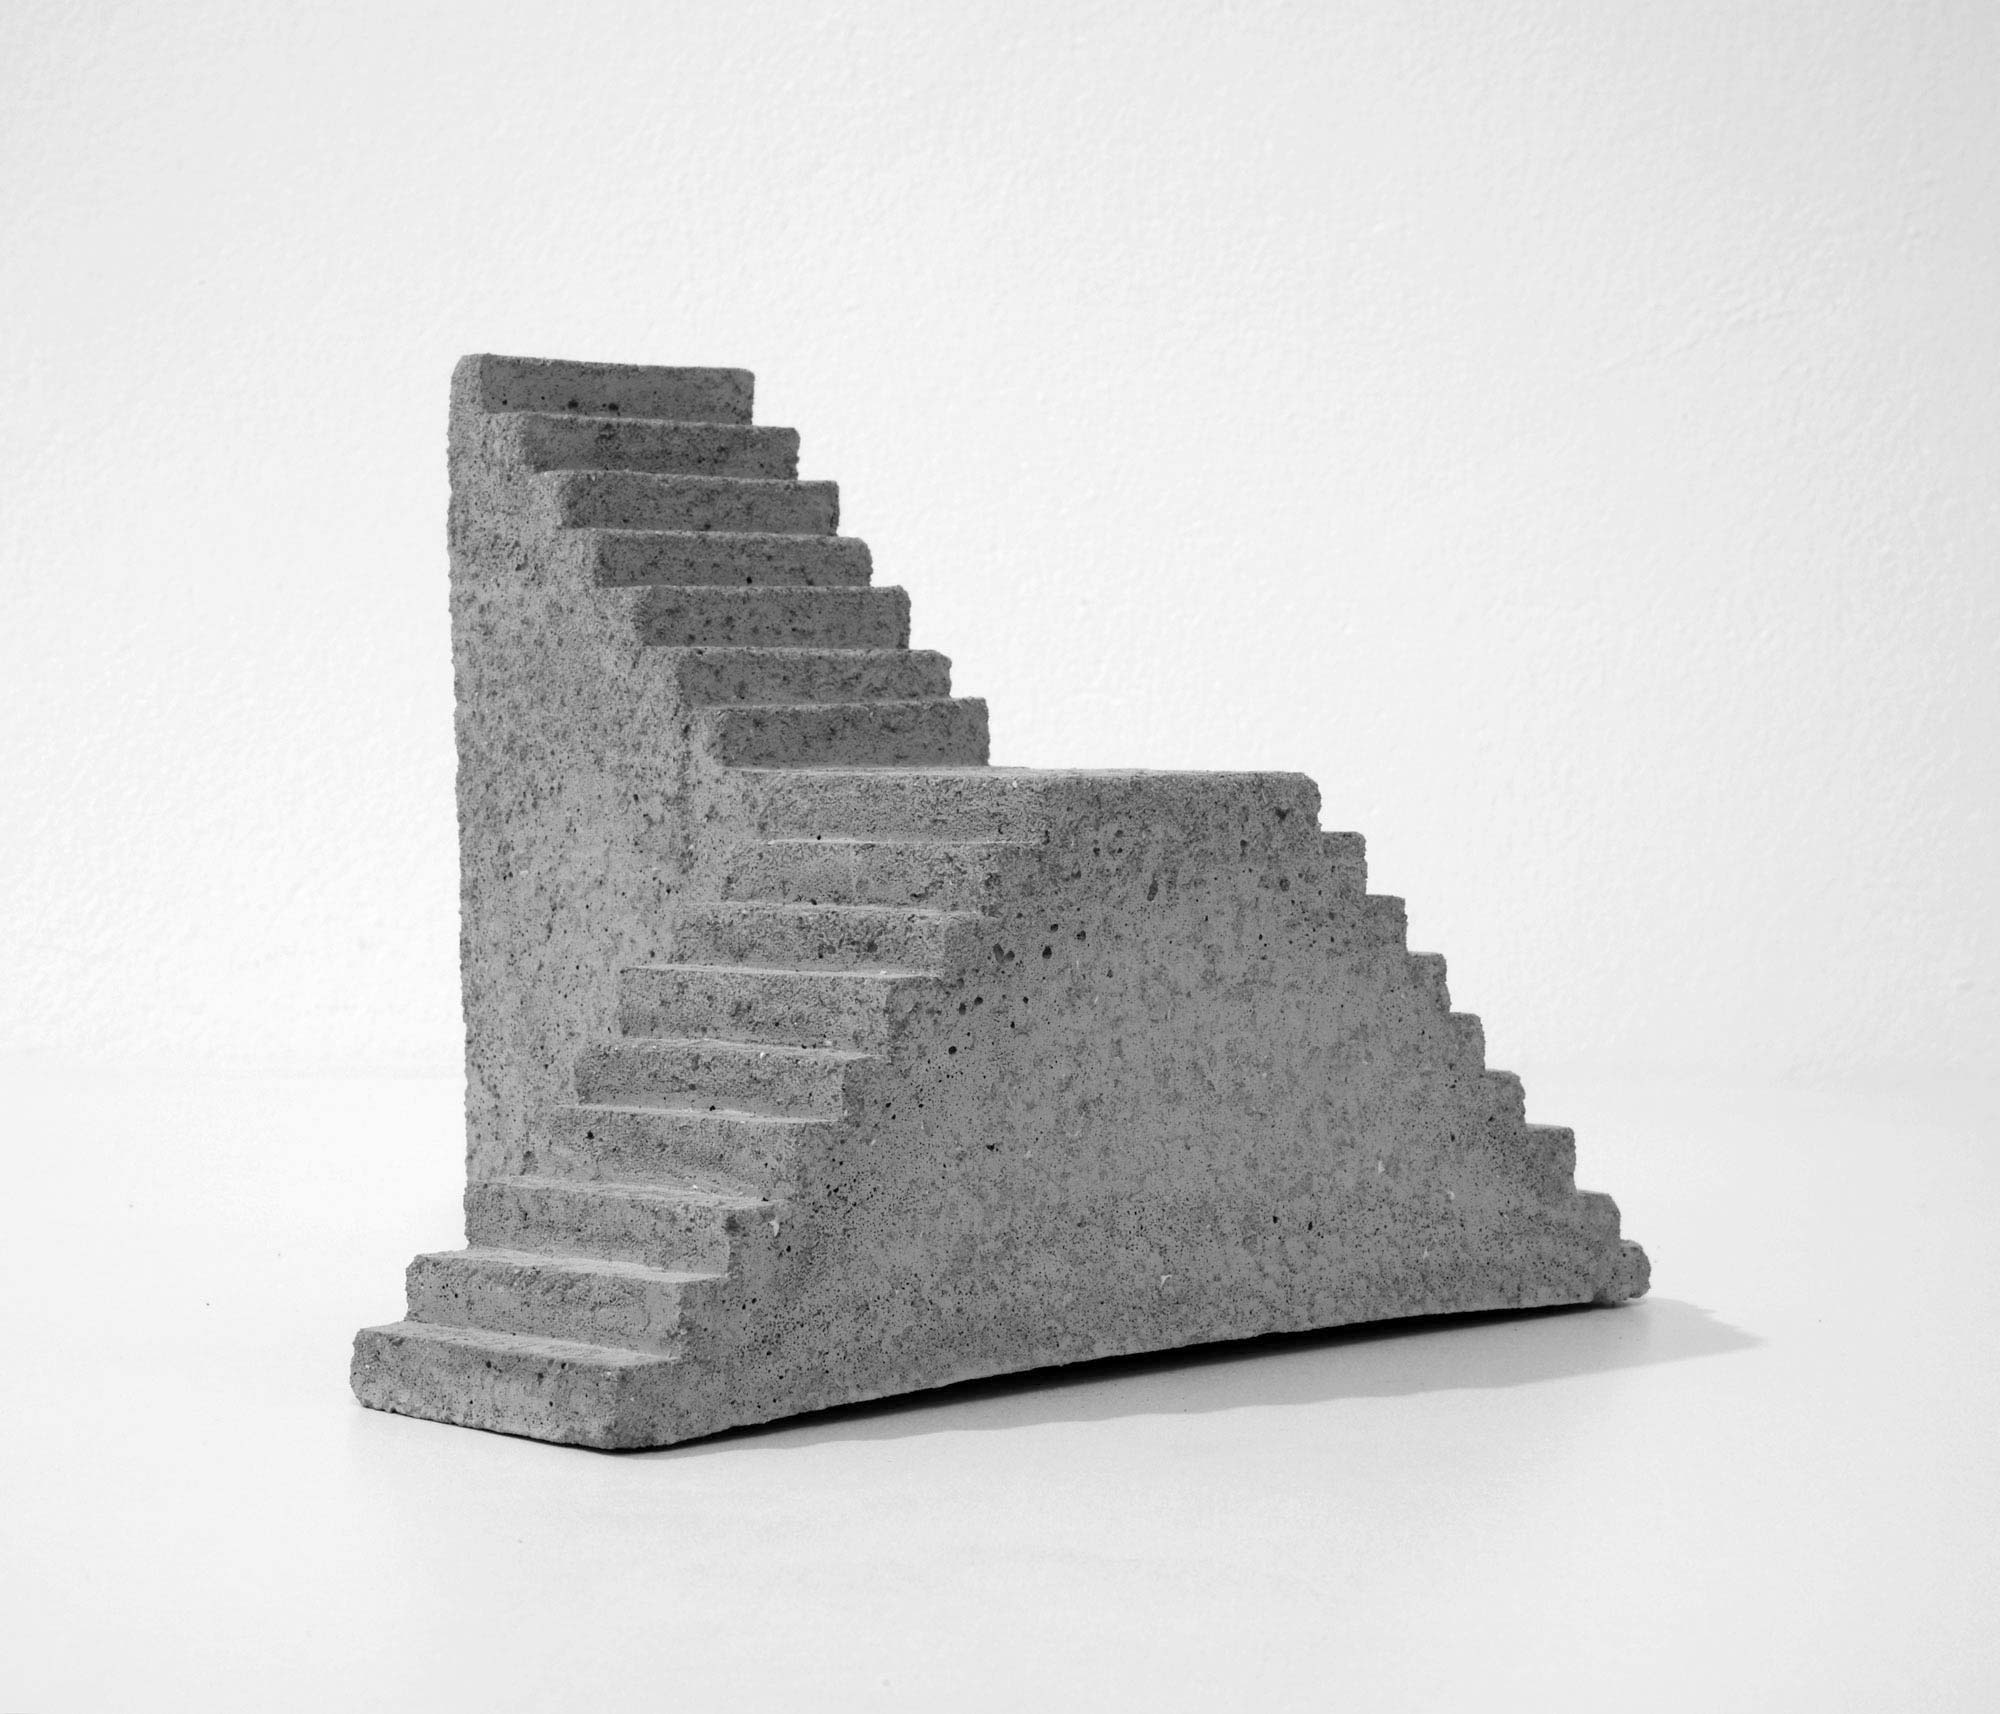 mattia listowski art design objet décoration sculpture béton moulage micro architecture maquette escalier double simple édition limitée numérotée signée paris bruxelles 2019